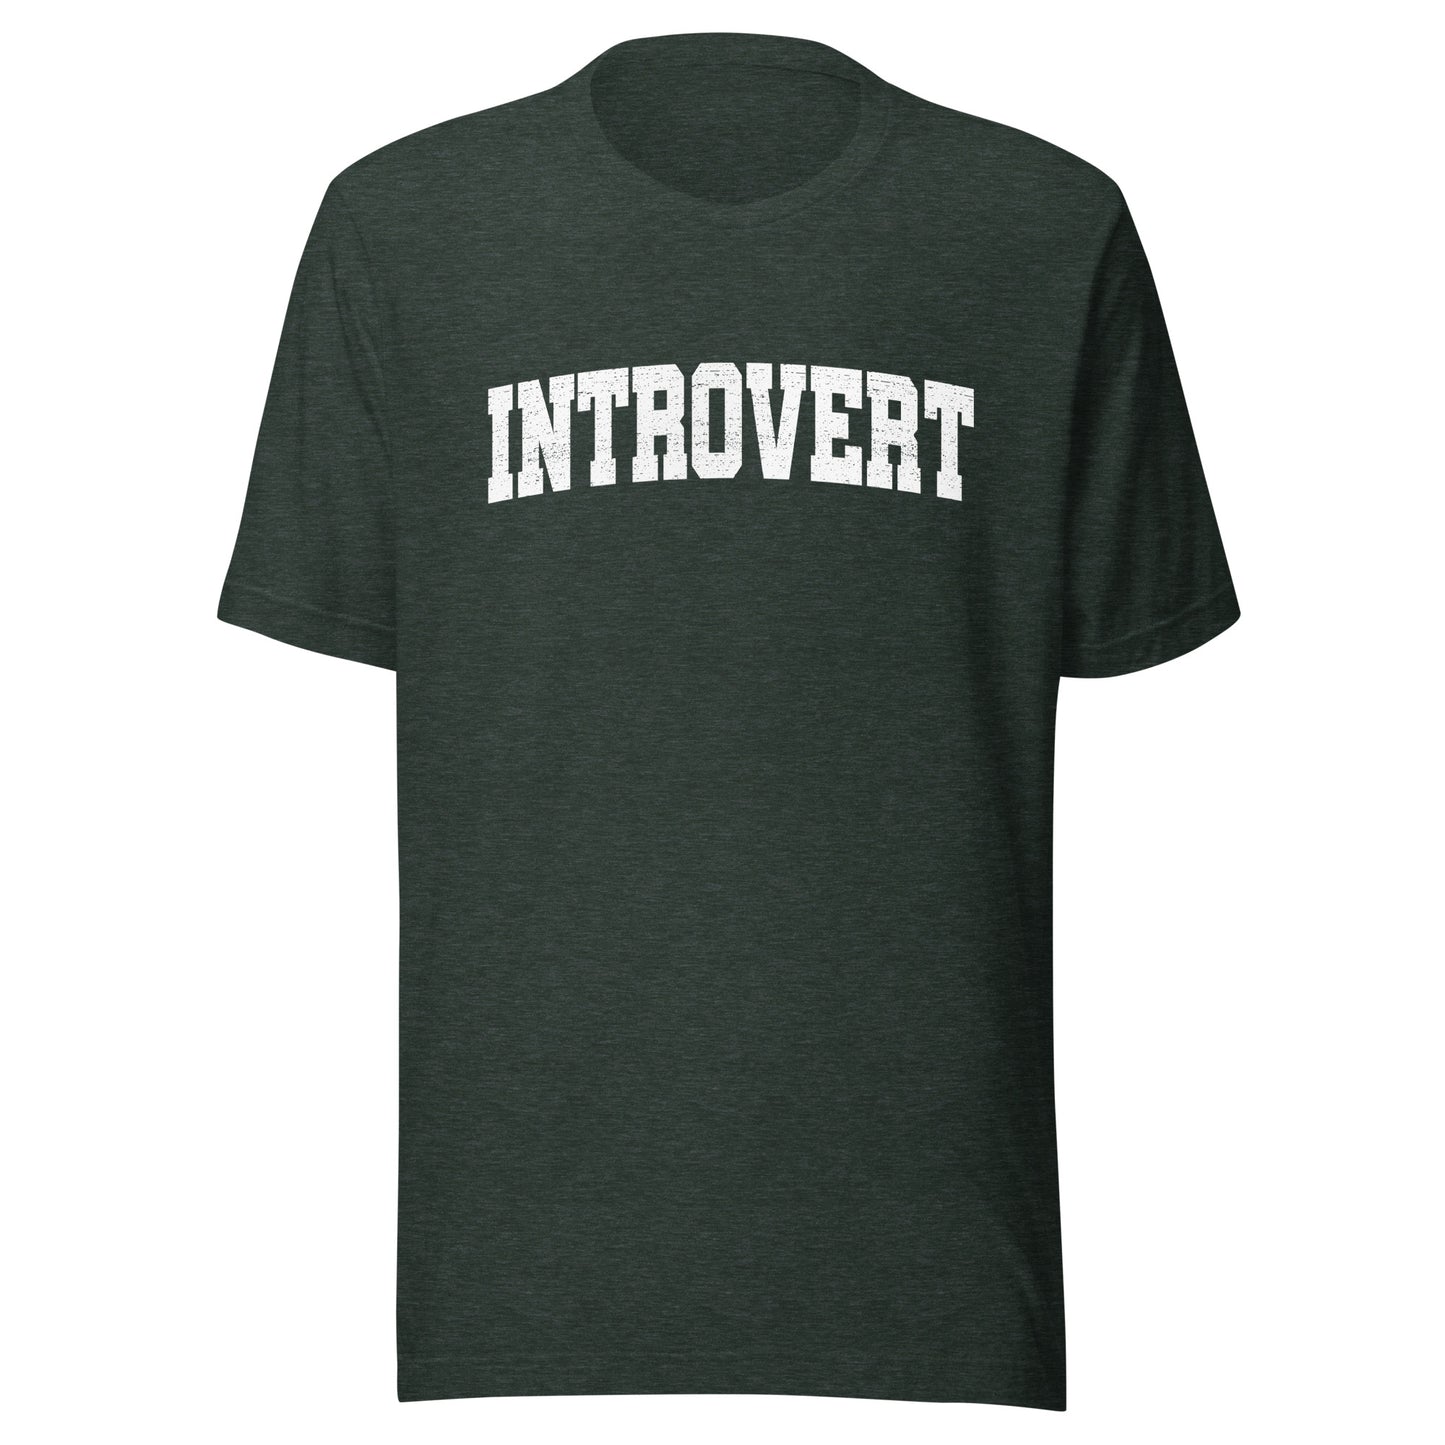 introvert t-shirt